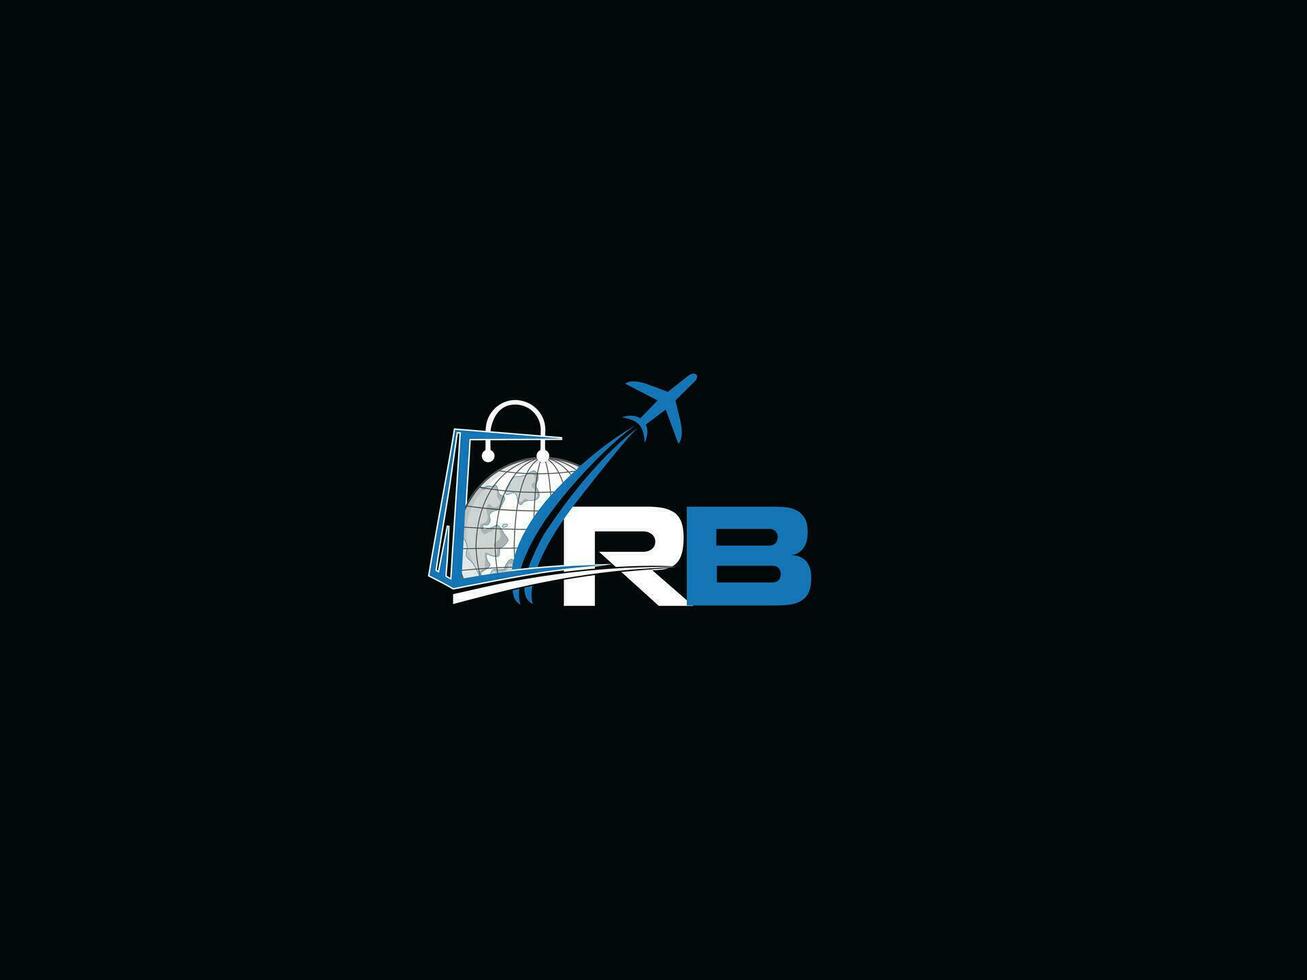 rb inicial viaje logo, creativo global rb de viaje logo letra vector